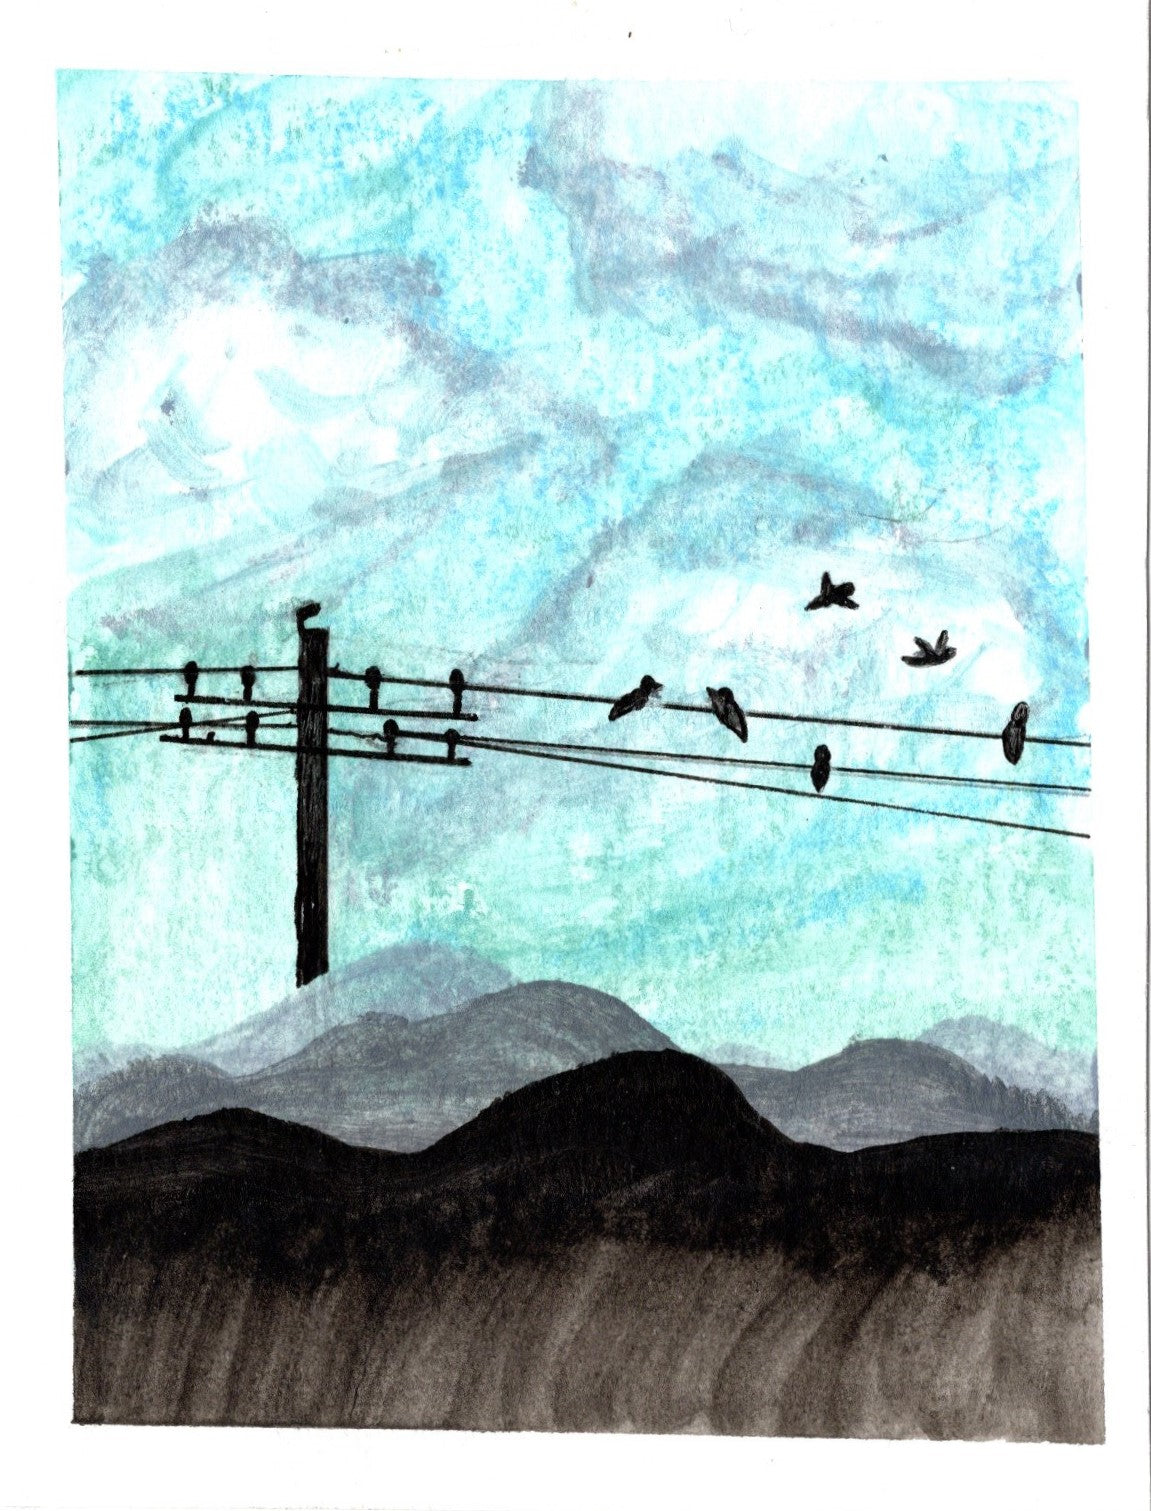 Birds on Wire